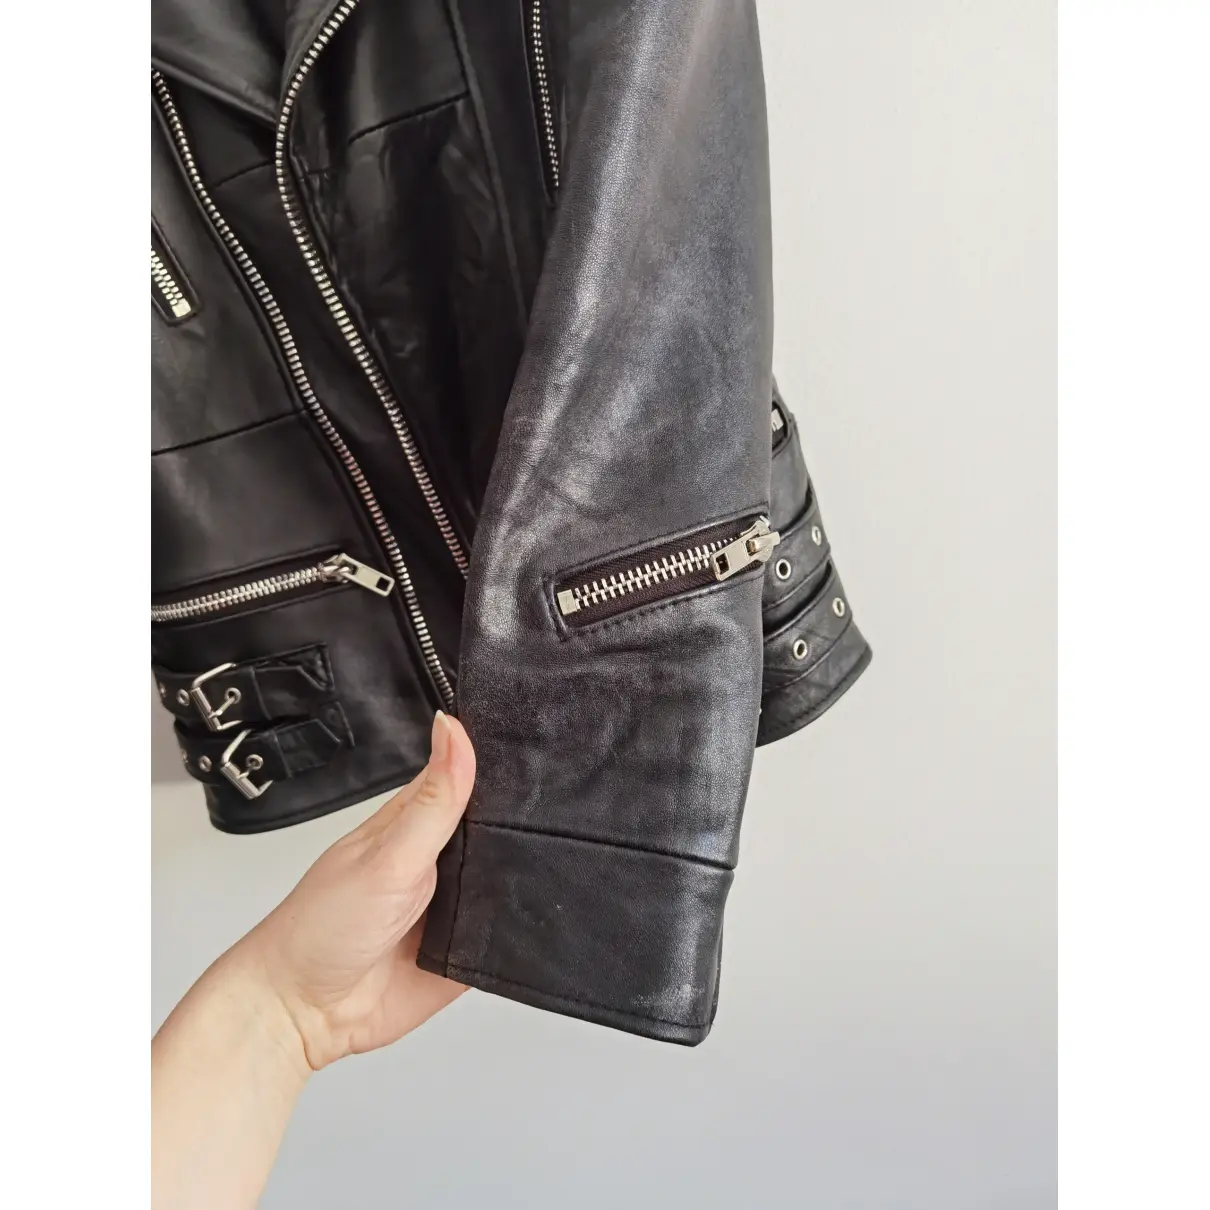 Leather biker jacket Deadwood